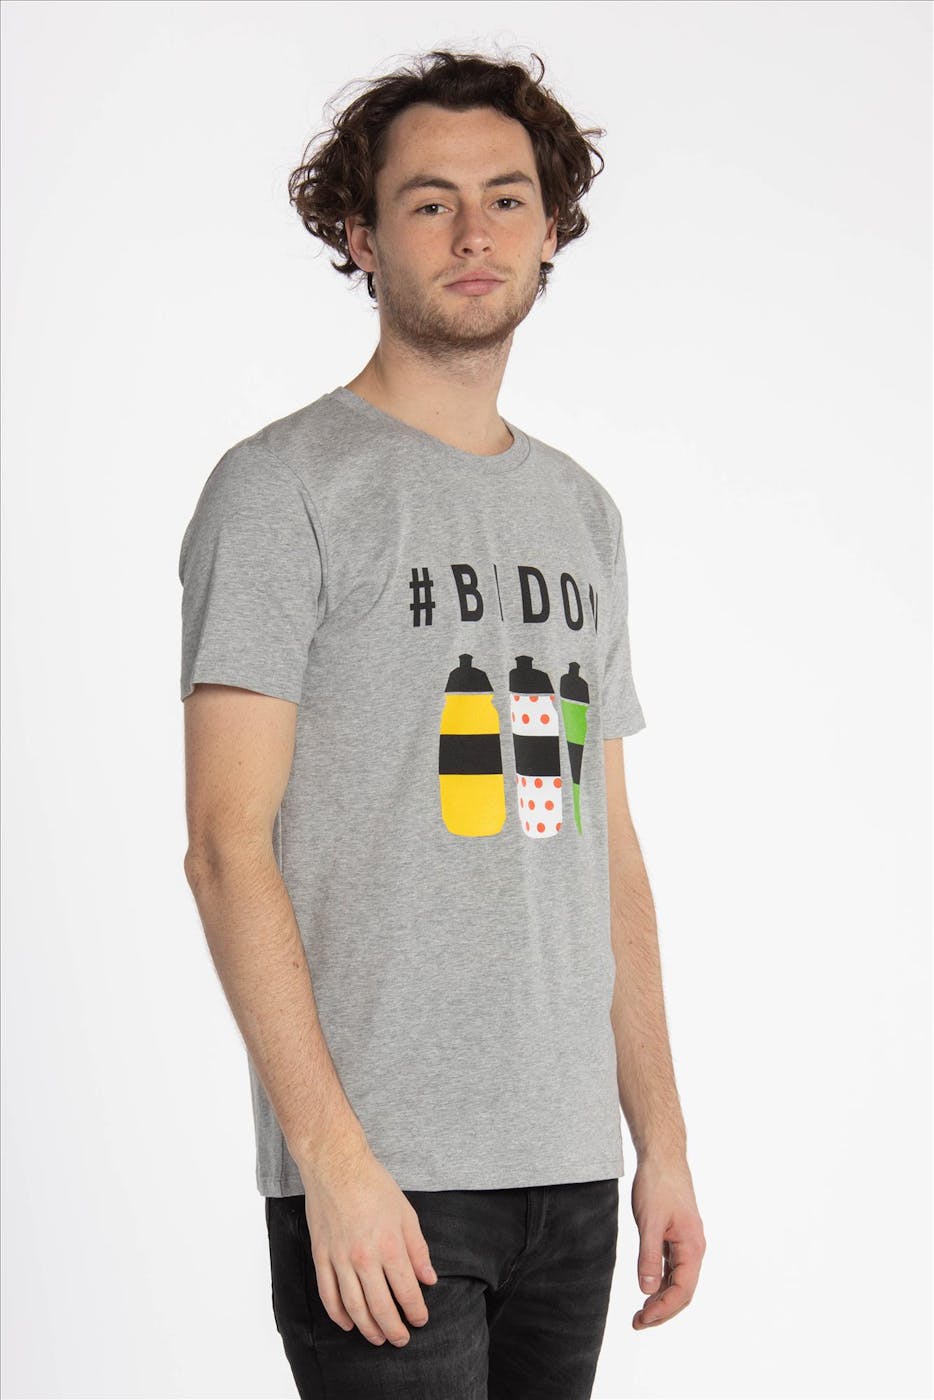 Brooklyn - Intwiel Grijze Bidon T-shirt